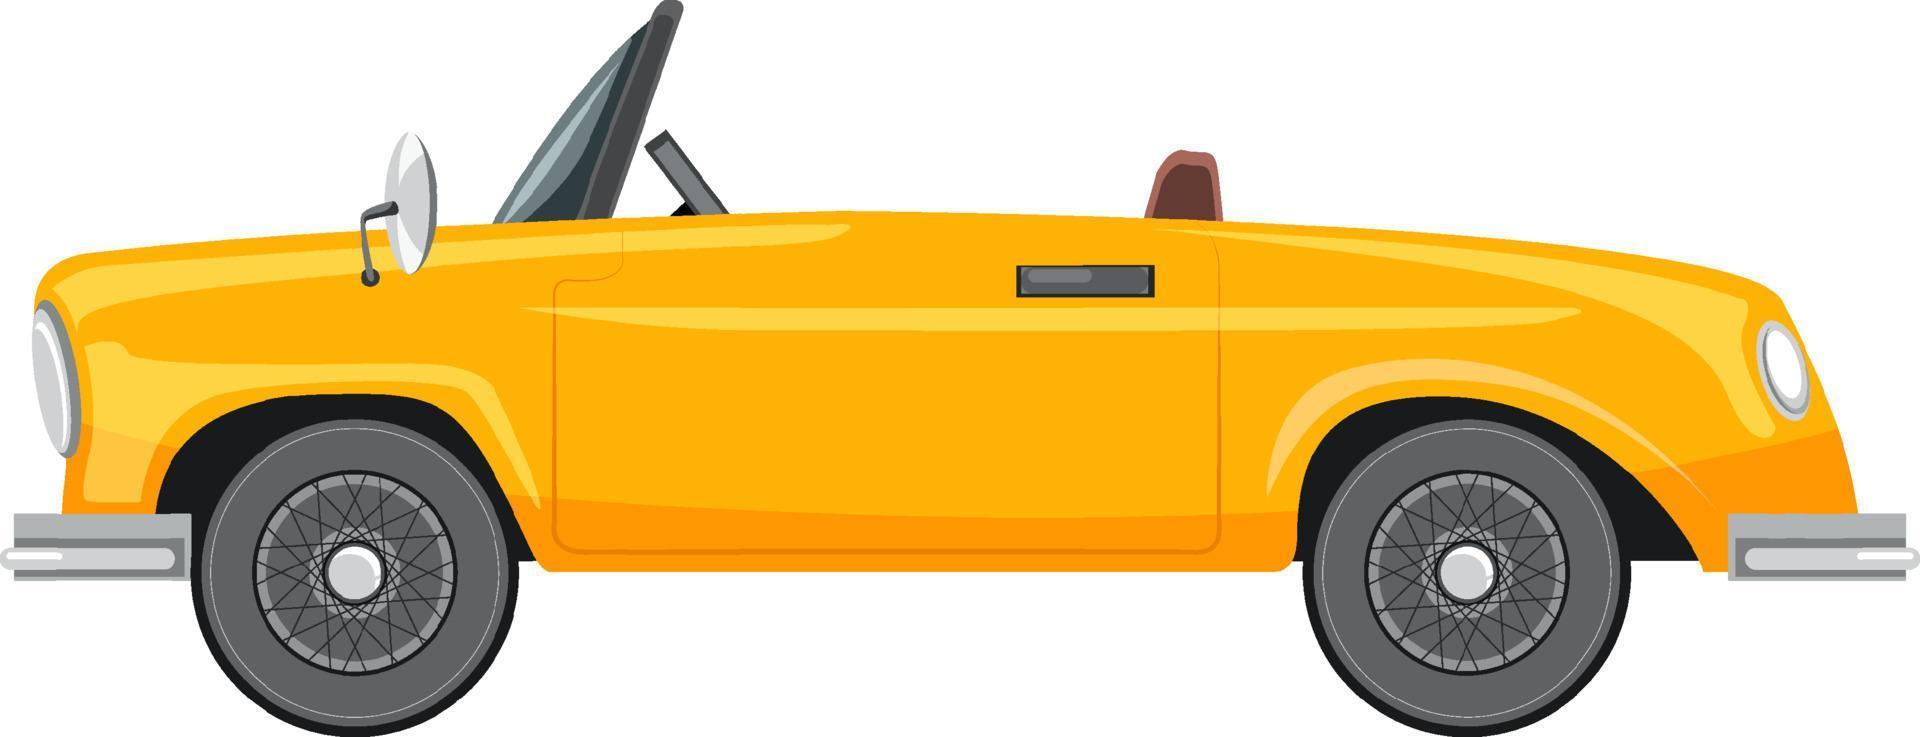 klassieke gele auto in cartoonstijl vector